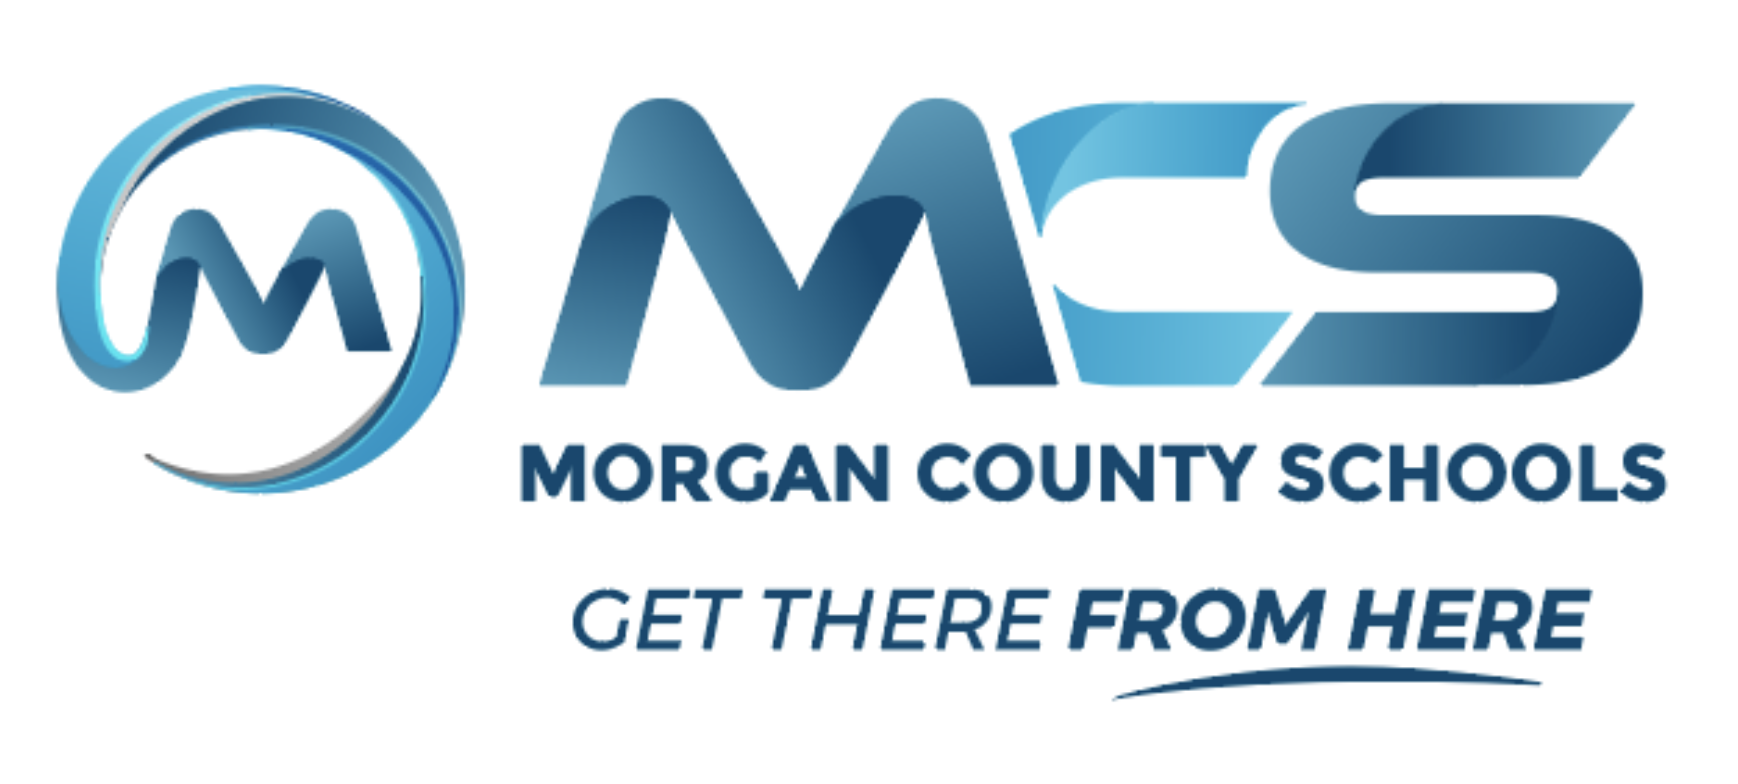 Morgan County Schools